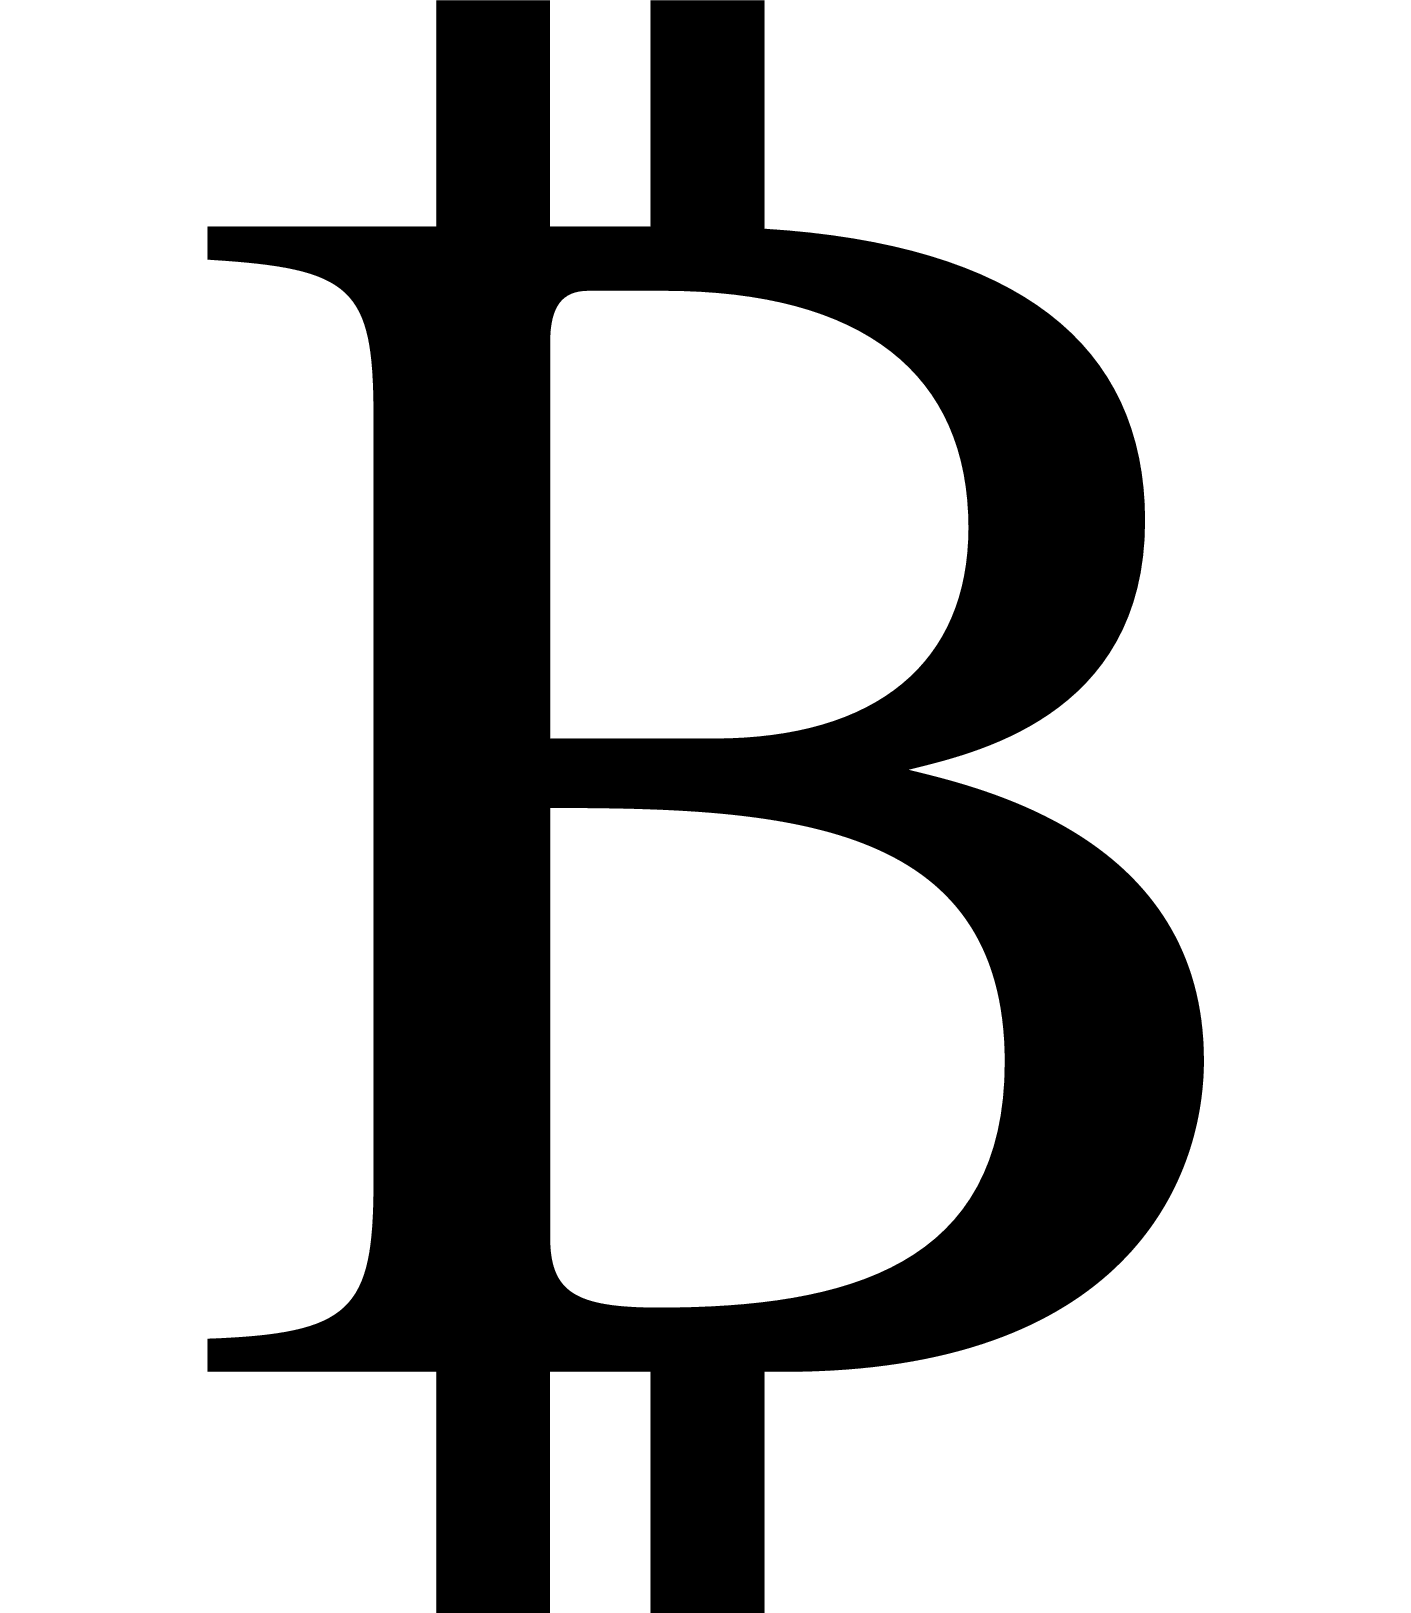 bitcoin futures simbol pe tragere